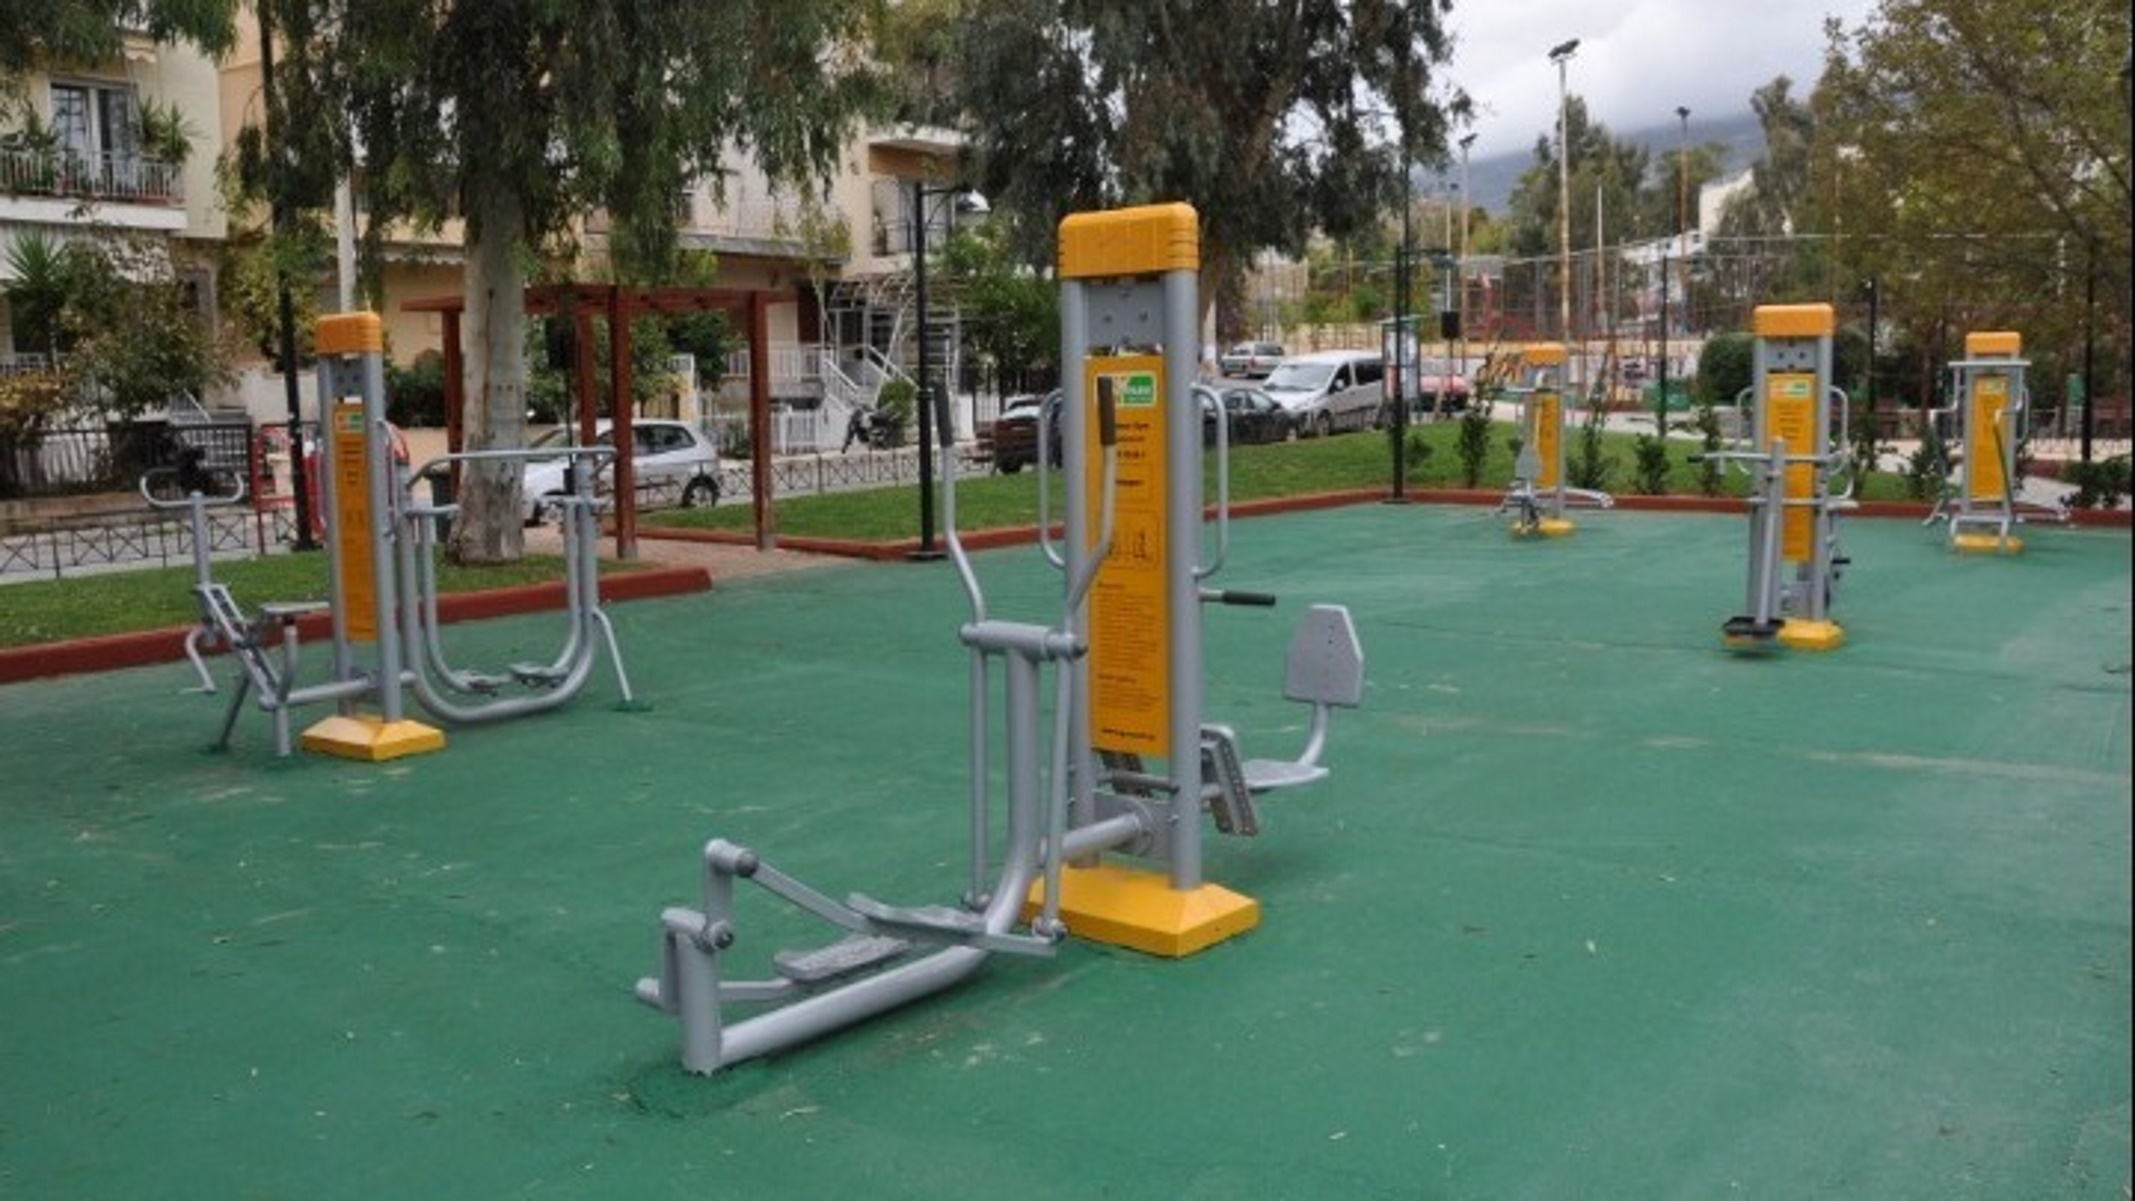 Θεσσαλονίκη: Νέα υπαίθρια γυμναστήρια για ατομική άσκηση σε δημόσιους χώρους